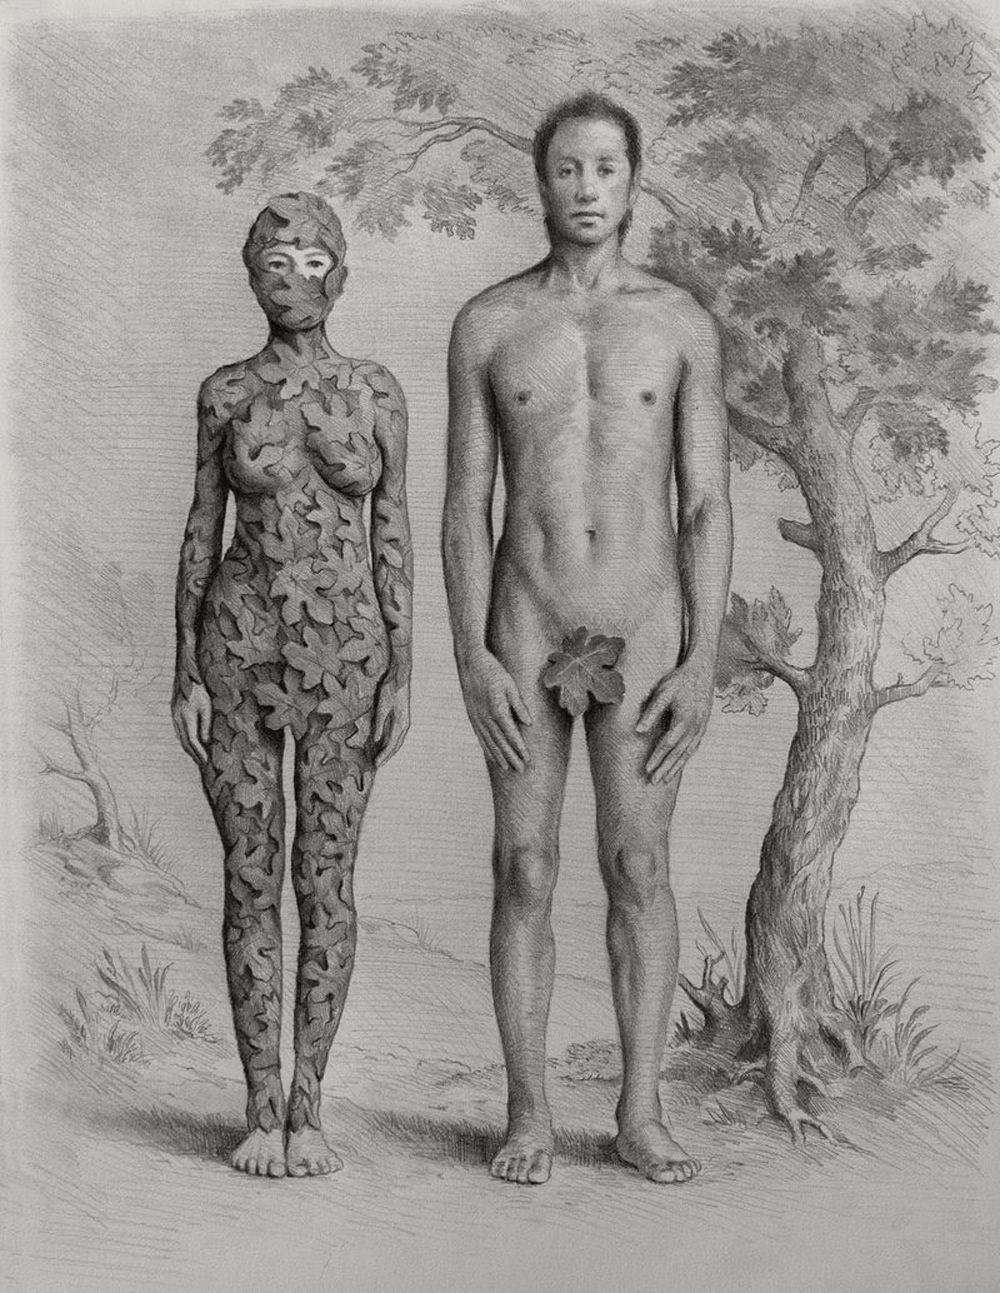 لوحة "آدم وحواء" للفنان الإيراني رؤوف حقيقي. "Adam And Eve" by Raoof Haghighi c/o A Gallery, London, UK